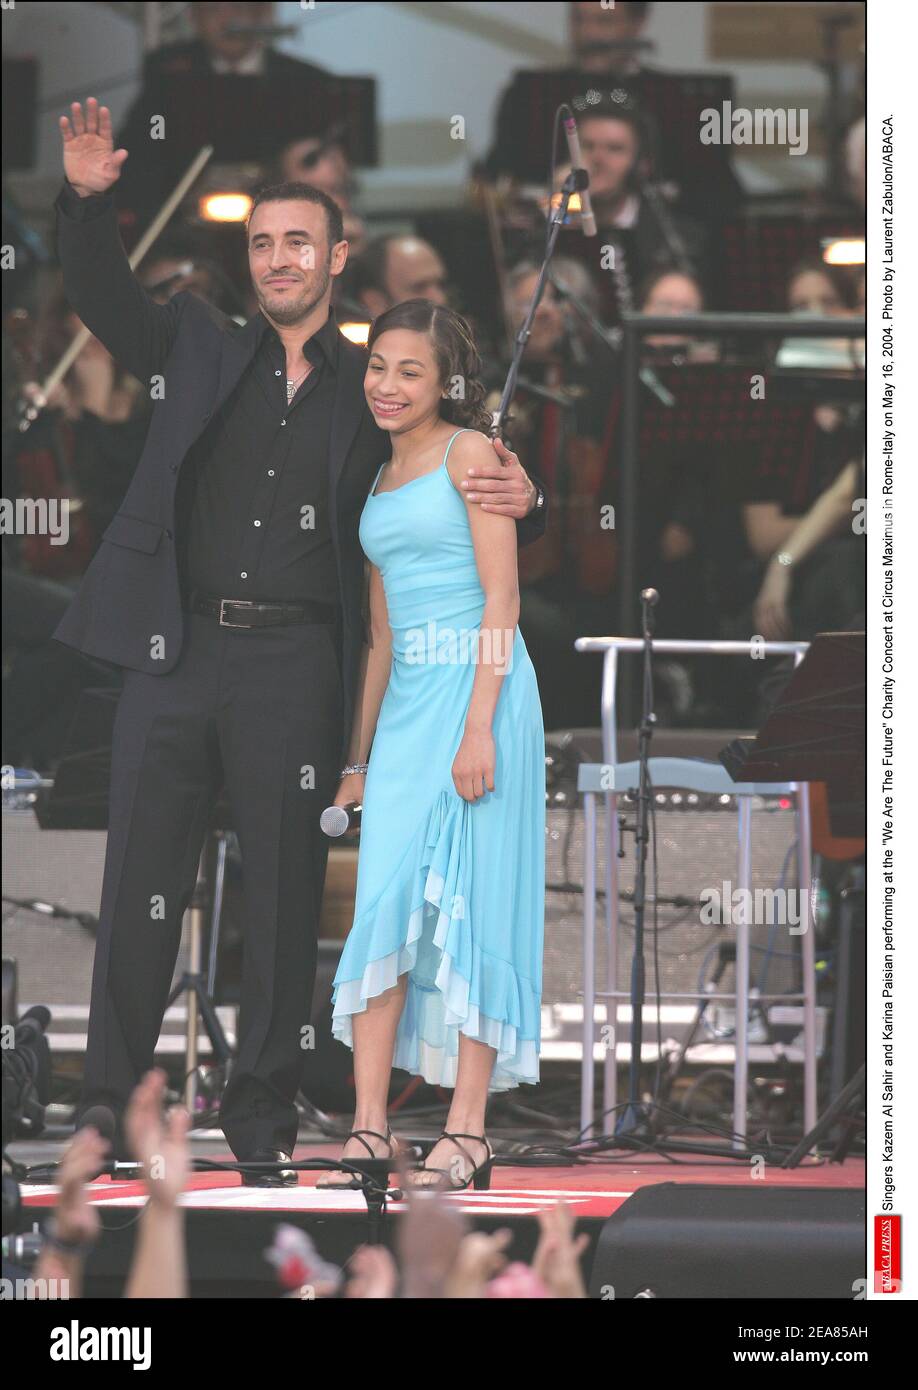 I cantanti Kazem al Sahir e Karina Paisian si esibiscono al Concerto We are the Future Charity al Circus Maximus di Roma-Italia il 16 maggio 2004. Foto di Laurent Zabulon/ABACA. Foto Stock